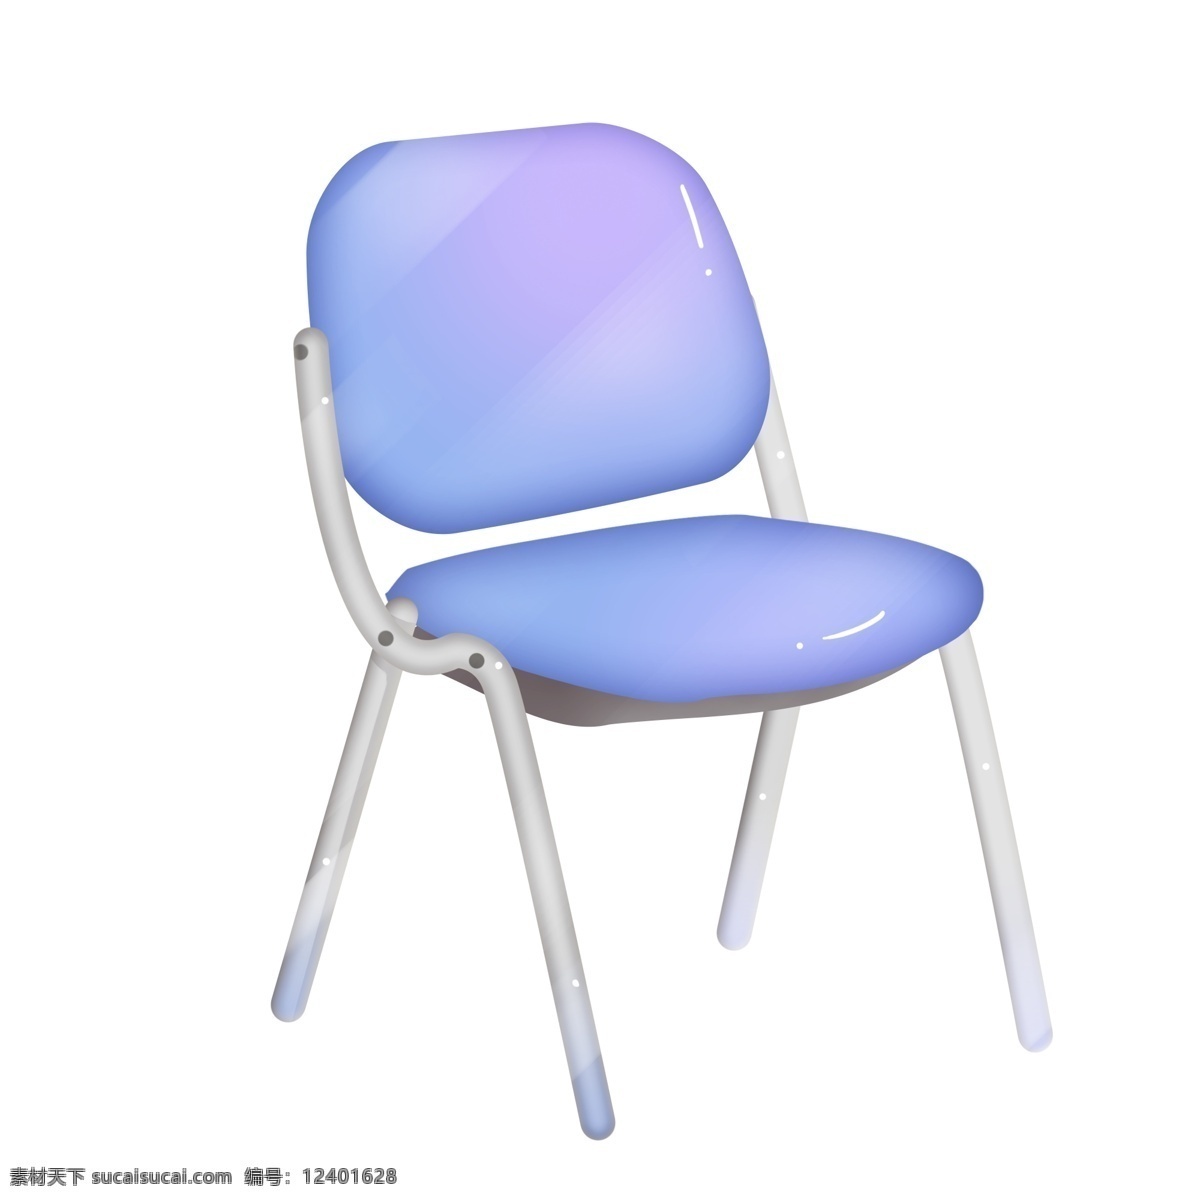 蓝色 椅子 装饰 插画 蓝色的椅子 家具椅子 办公椅子 漂亮的椅子 创意椅子 立体椅子 卡通椅子